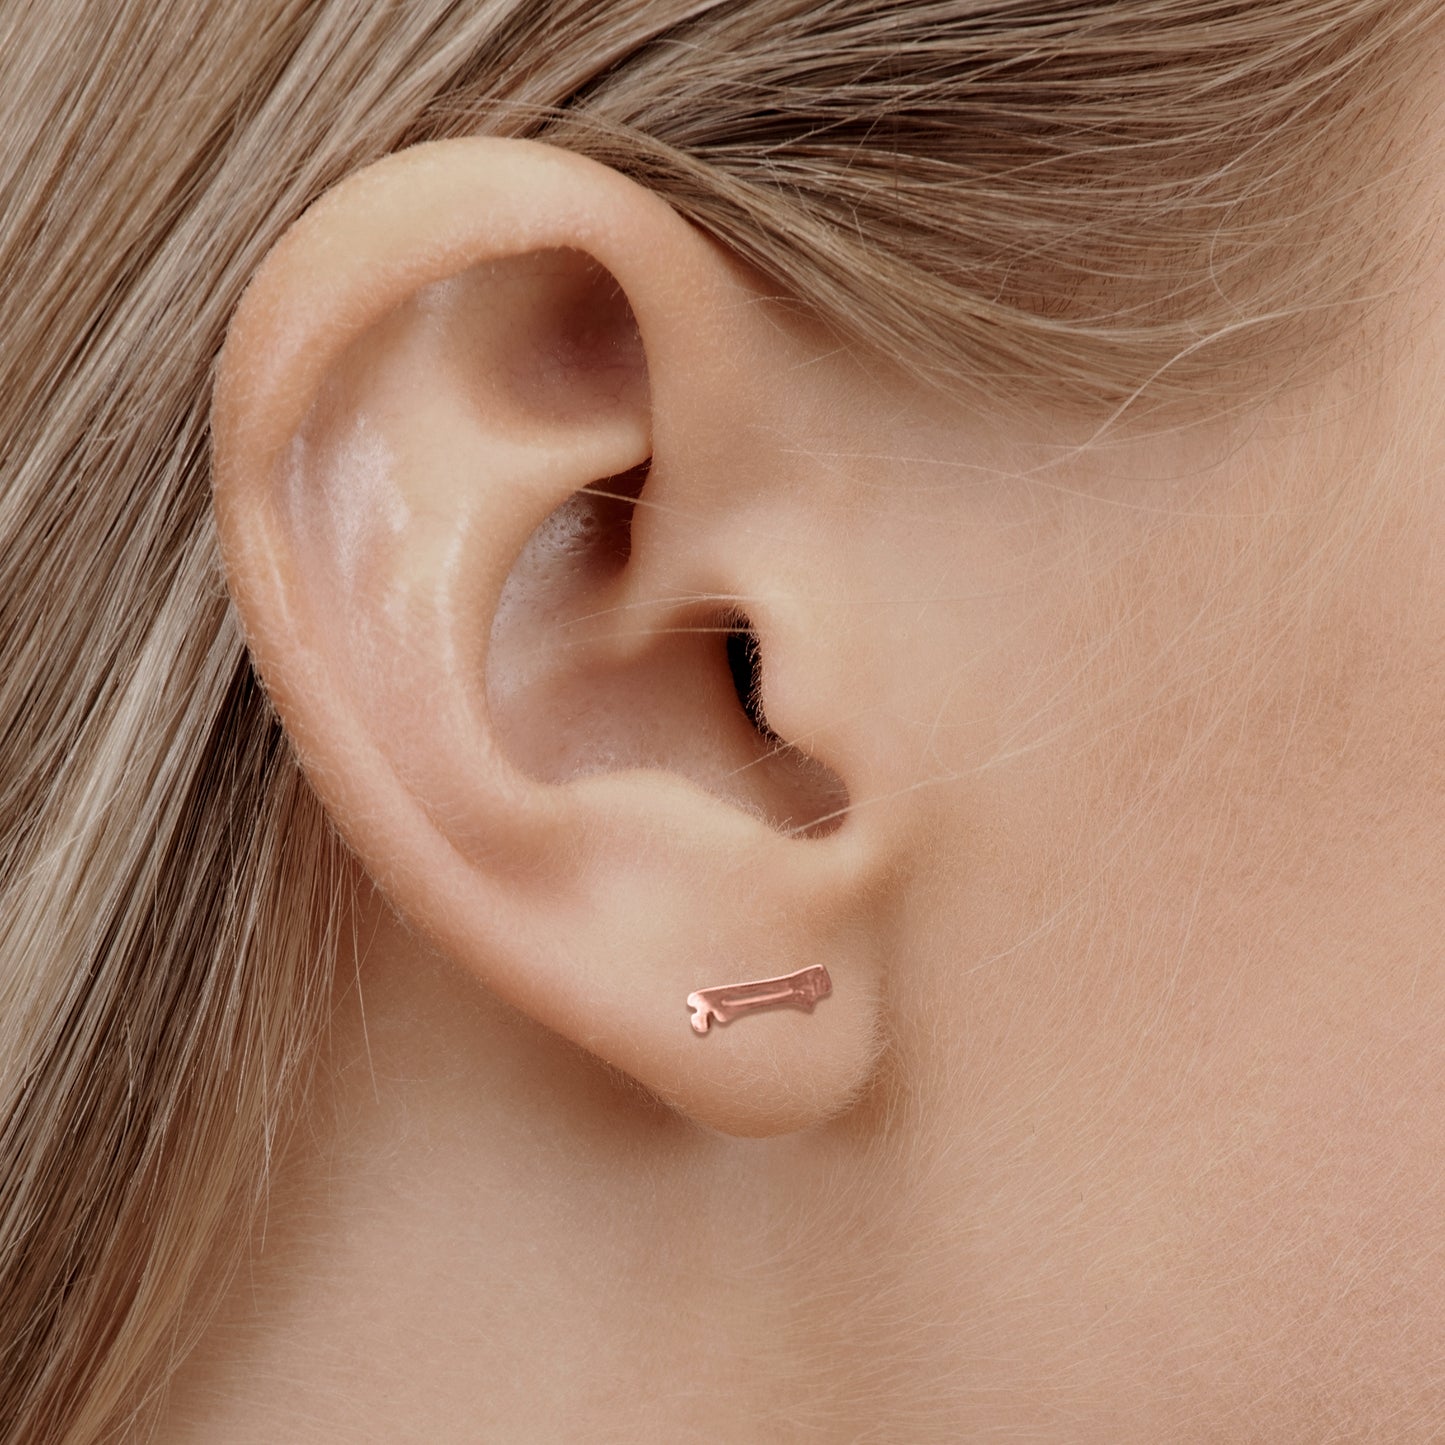 Ortho earrrings in rose gold on model